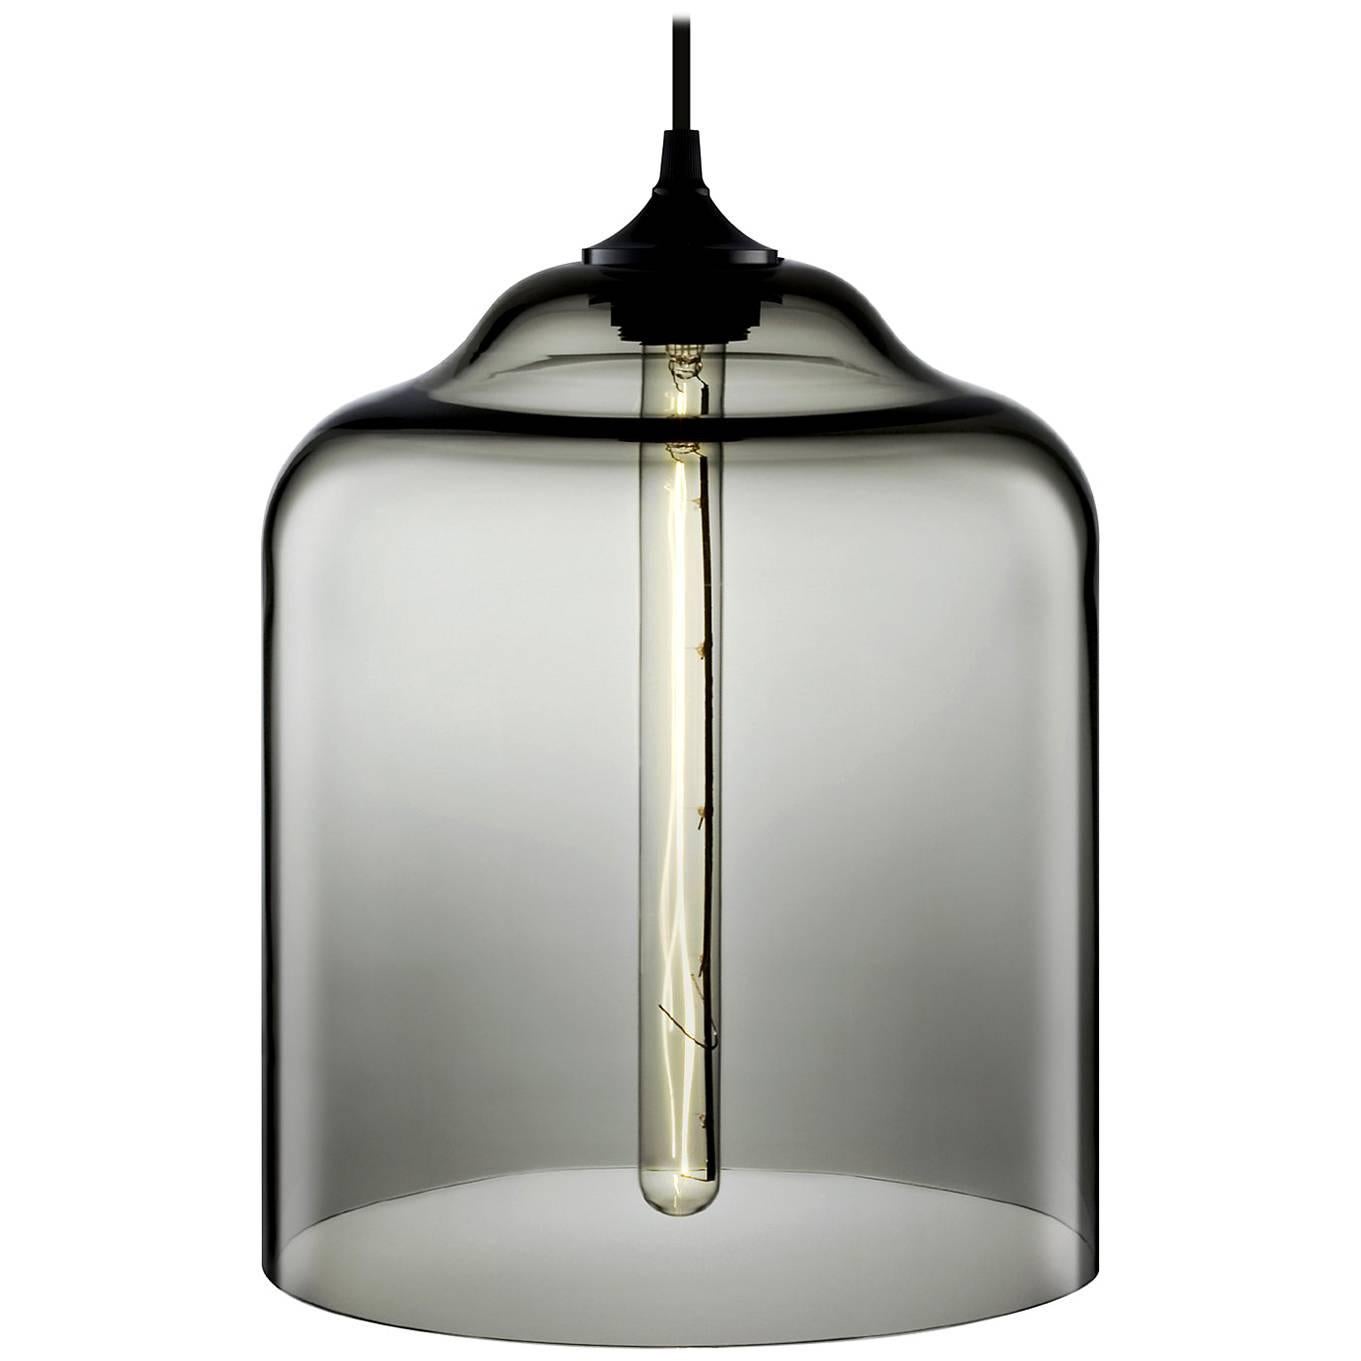 Bell Jar Gray Handblown Modern Glass Pendant Light, Made in the USA